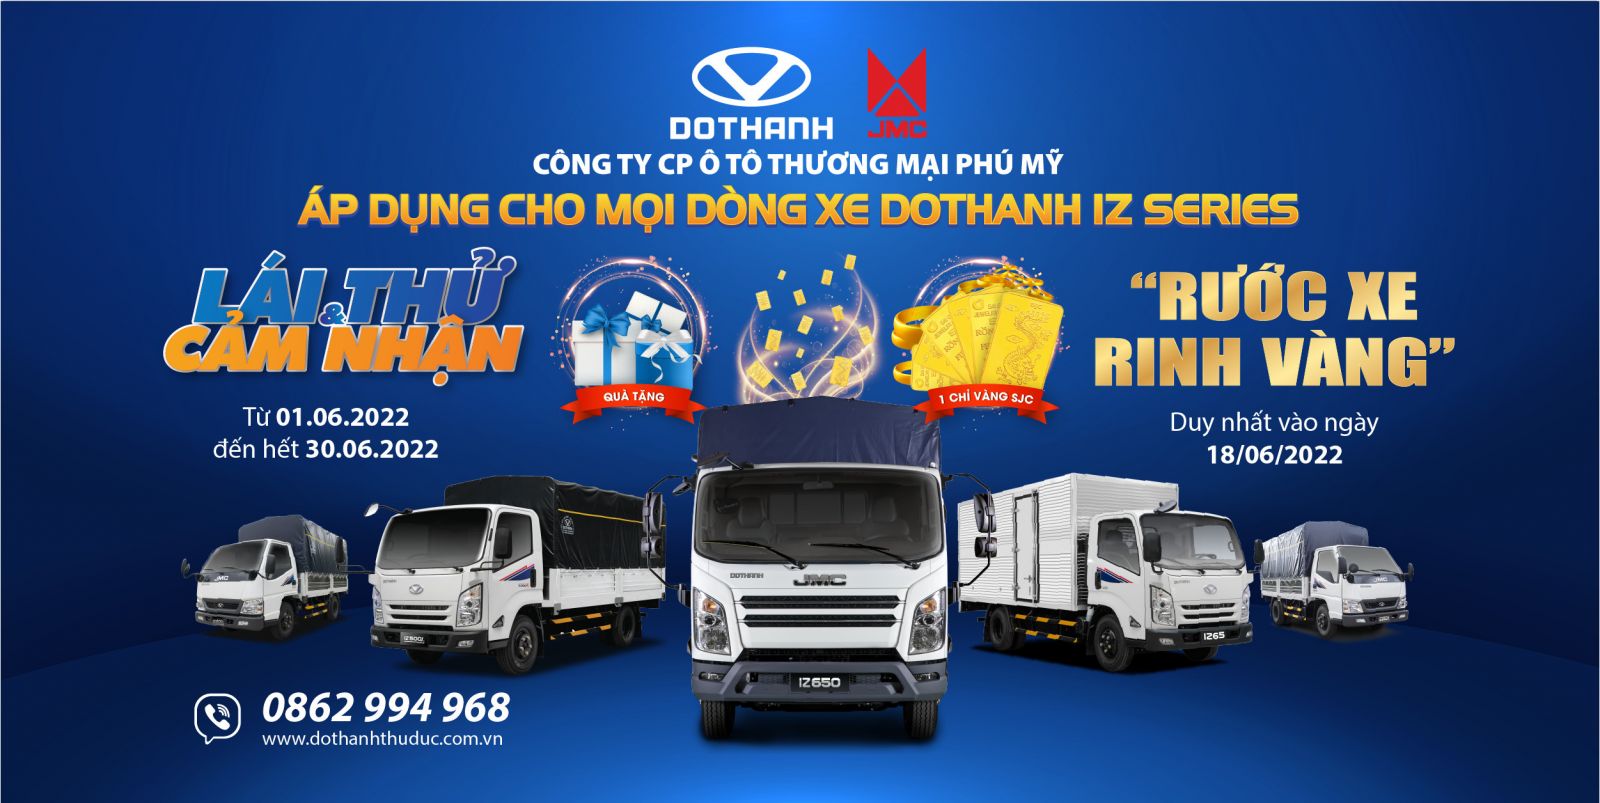 Sự kiện “Test Drive - Lái thử xe tải Đô Thành IZ” tháng 6/2022 và Ngày hội “Rước xe - Rinh Vàng” ngày 18/06/2022